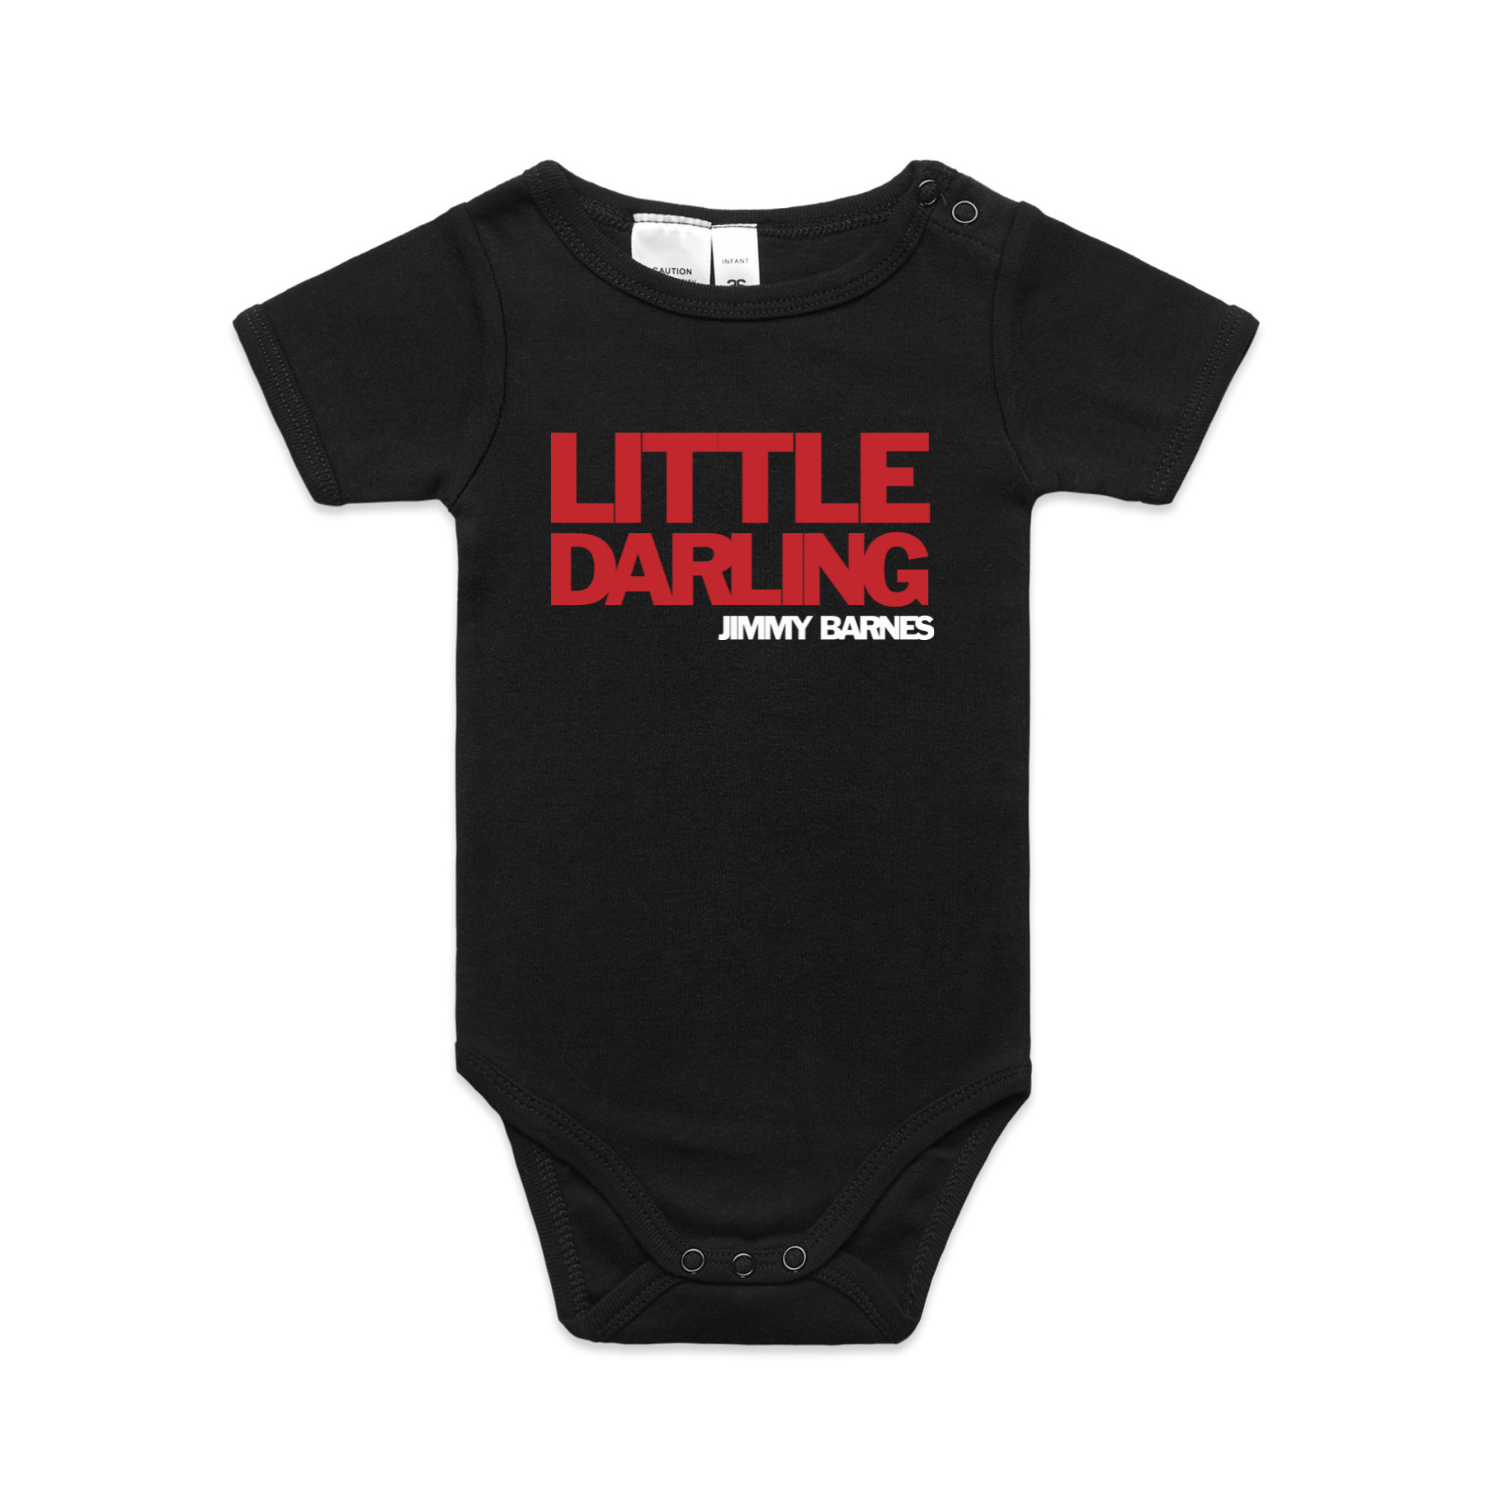 Little Darling | Jimmy Barnes | Baby Romper